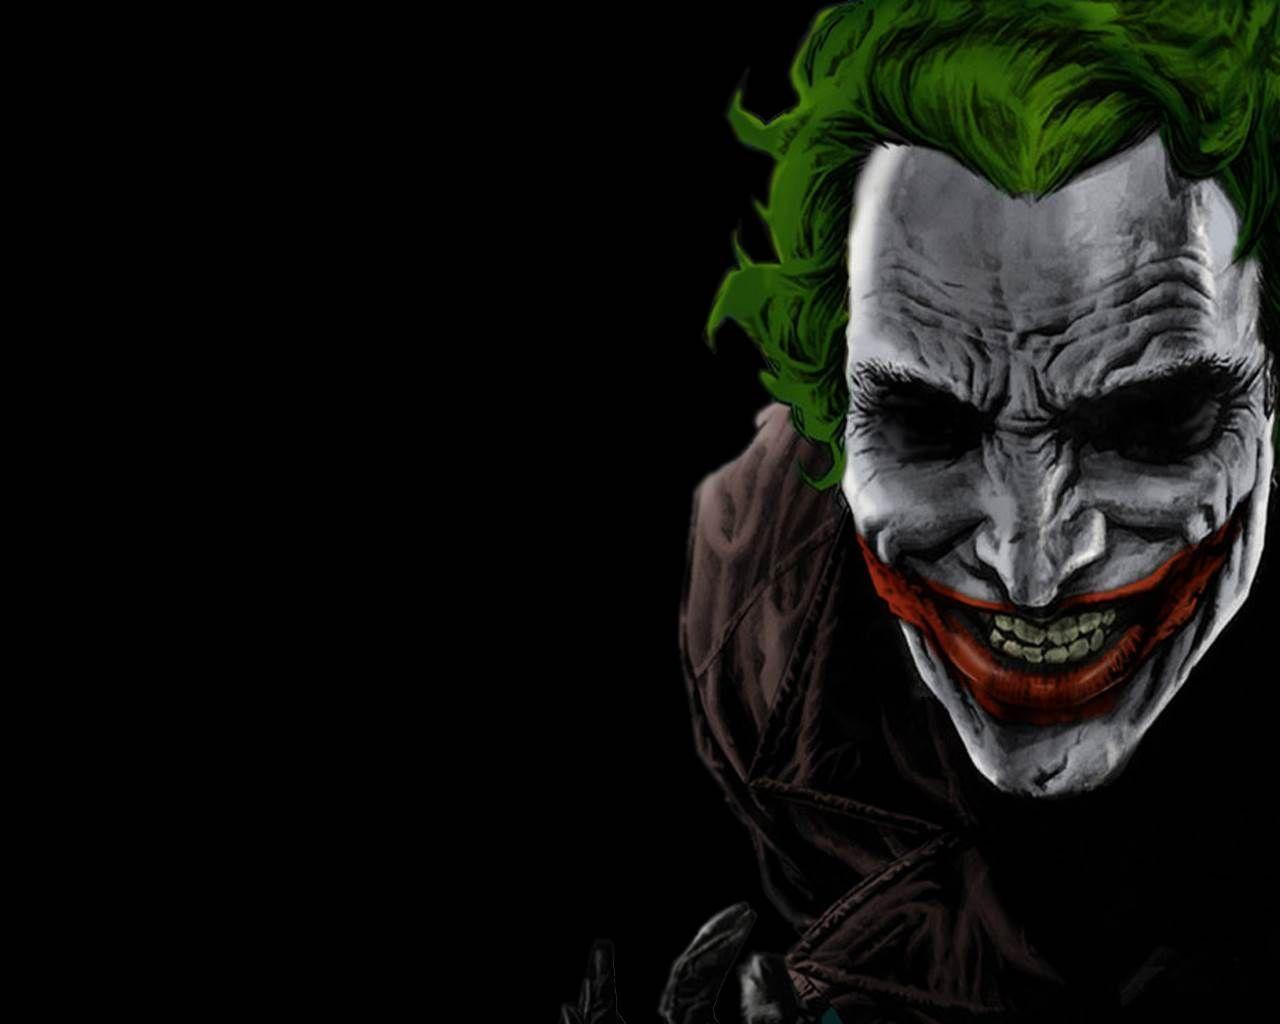 The Joker Wallpapers Top Những Hình Ảnh Đẹp